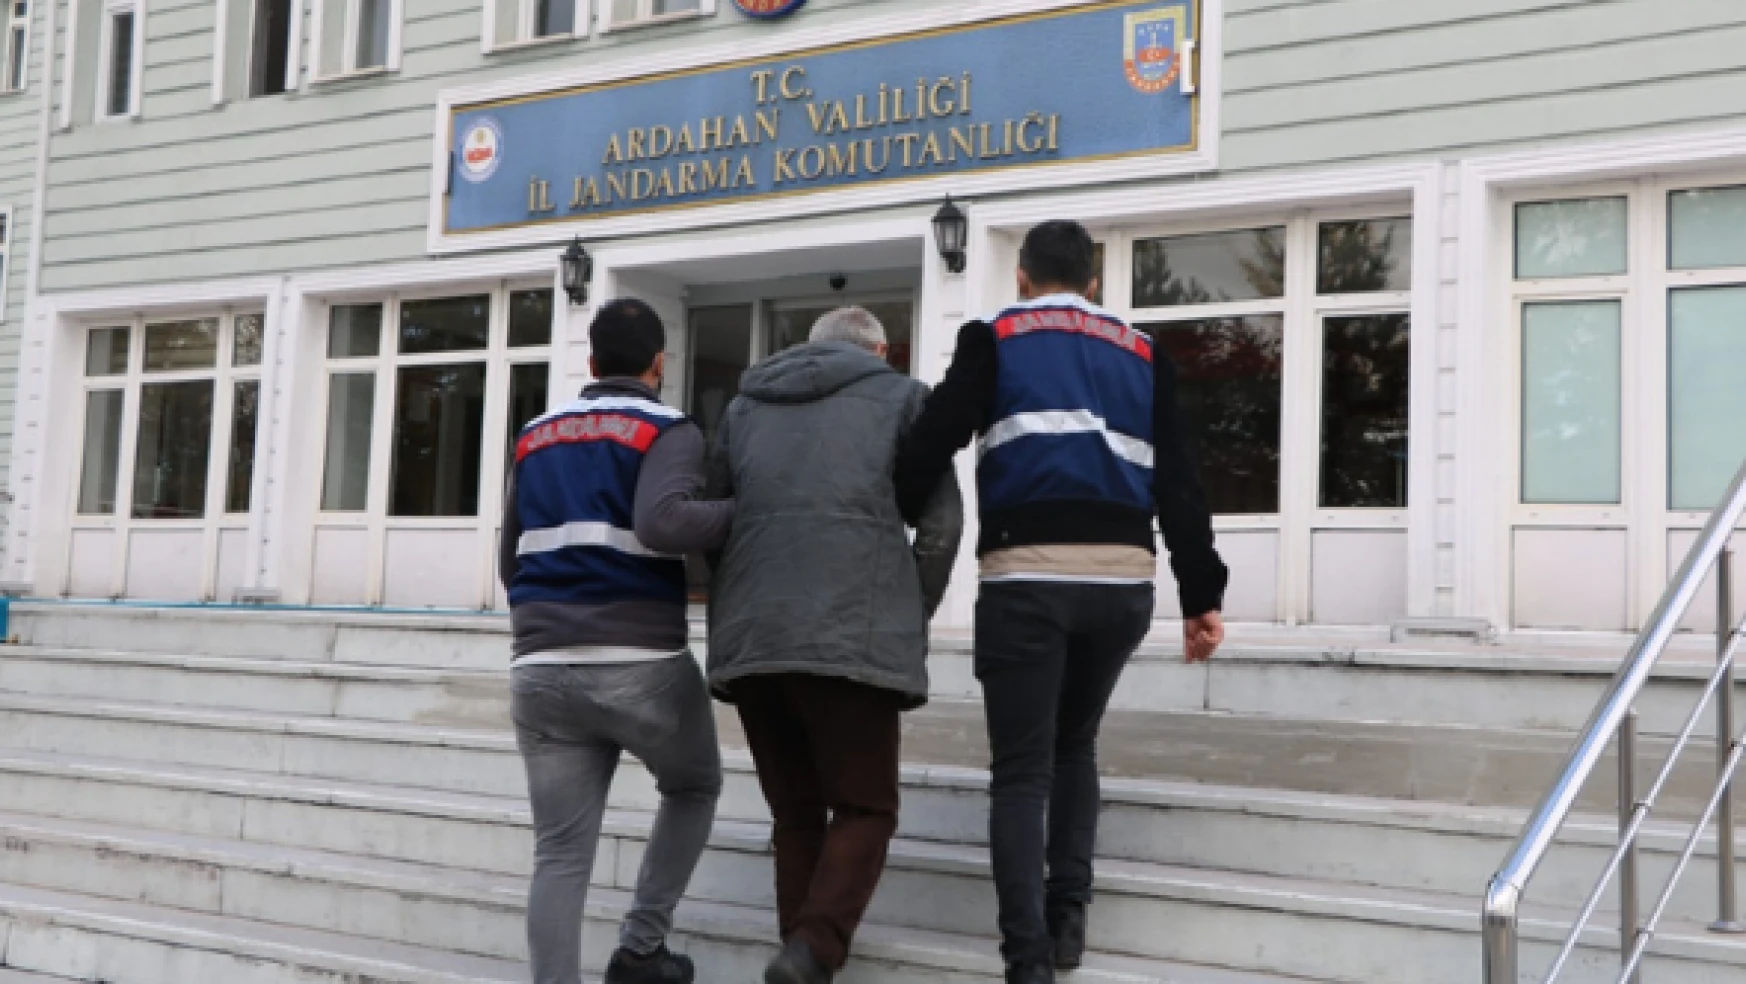 Ardahan'da terör propagandası yapan kişi gözaltına alındı